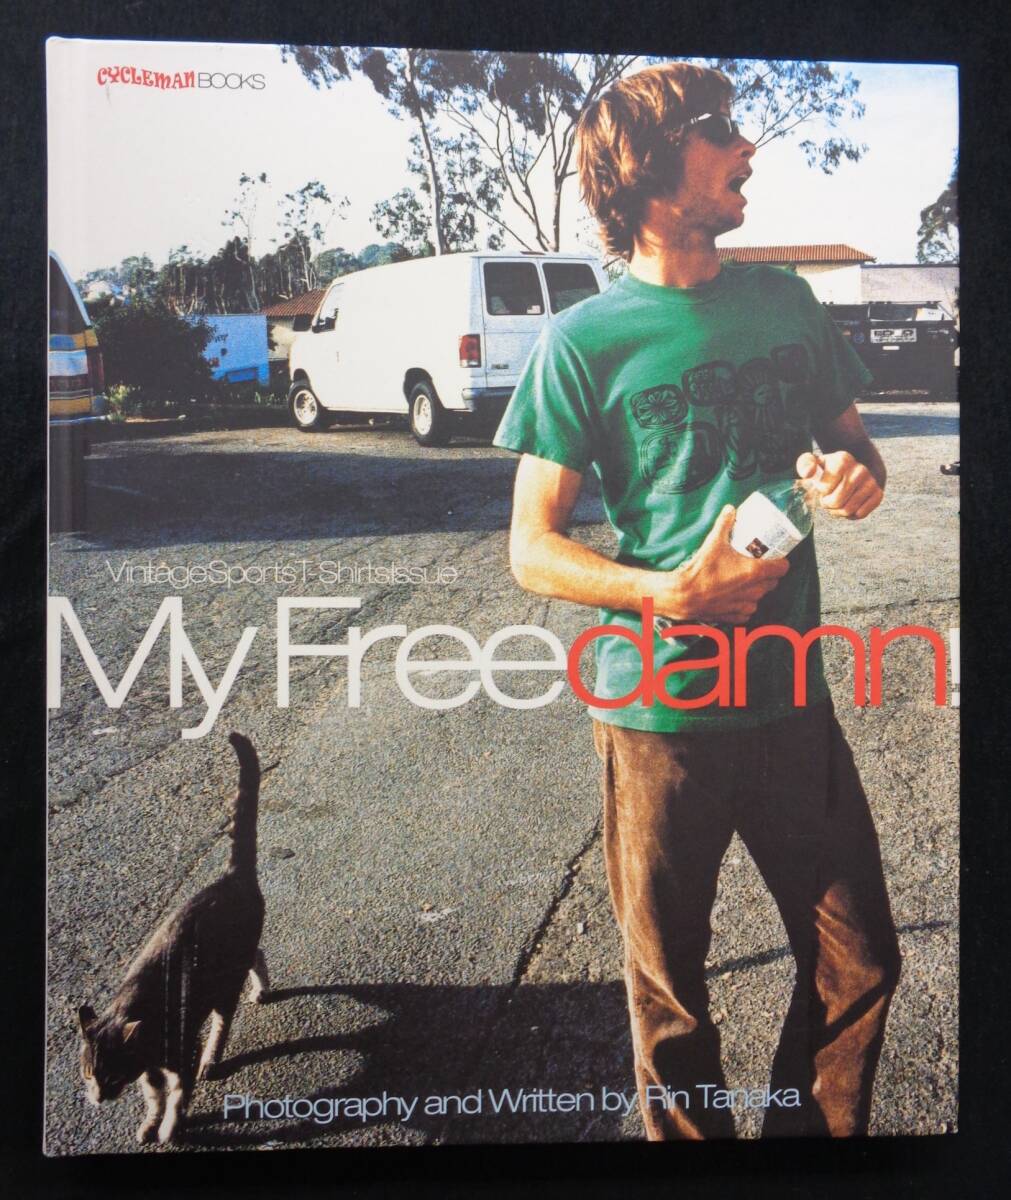  【 My Freedamn 1 】 ヴィンテージ・スポーツＴシャツ集 CYCLEMAN BOOKSの画像1